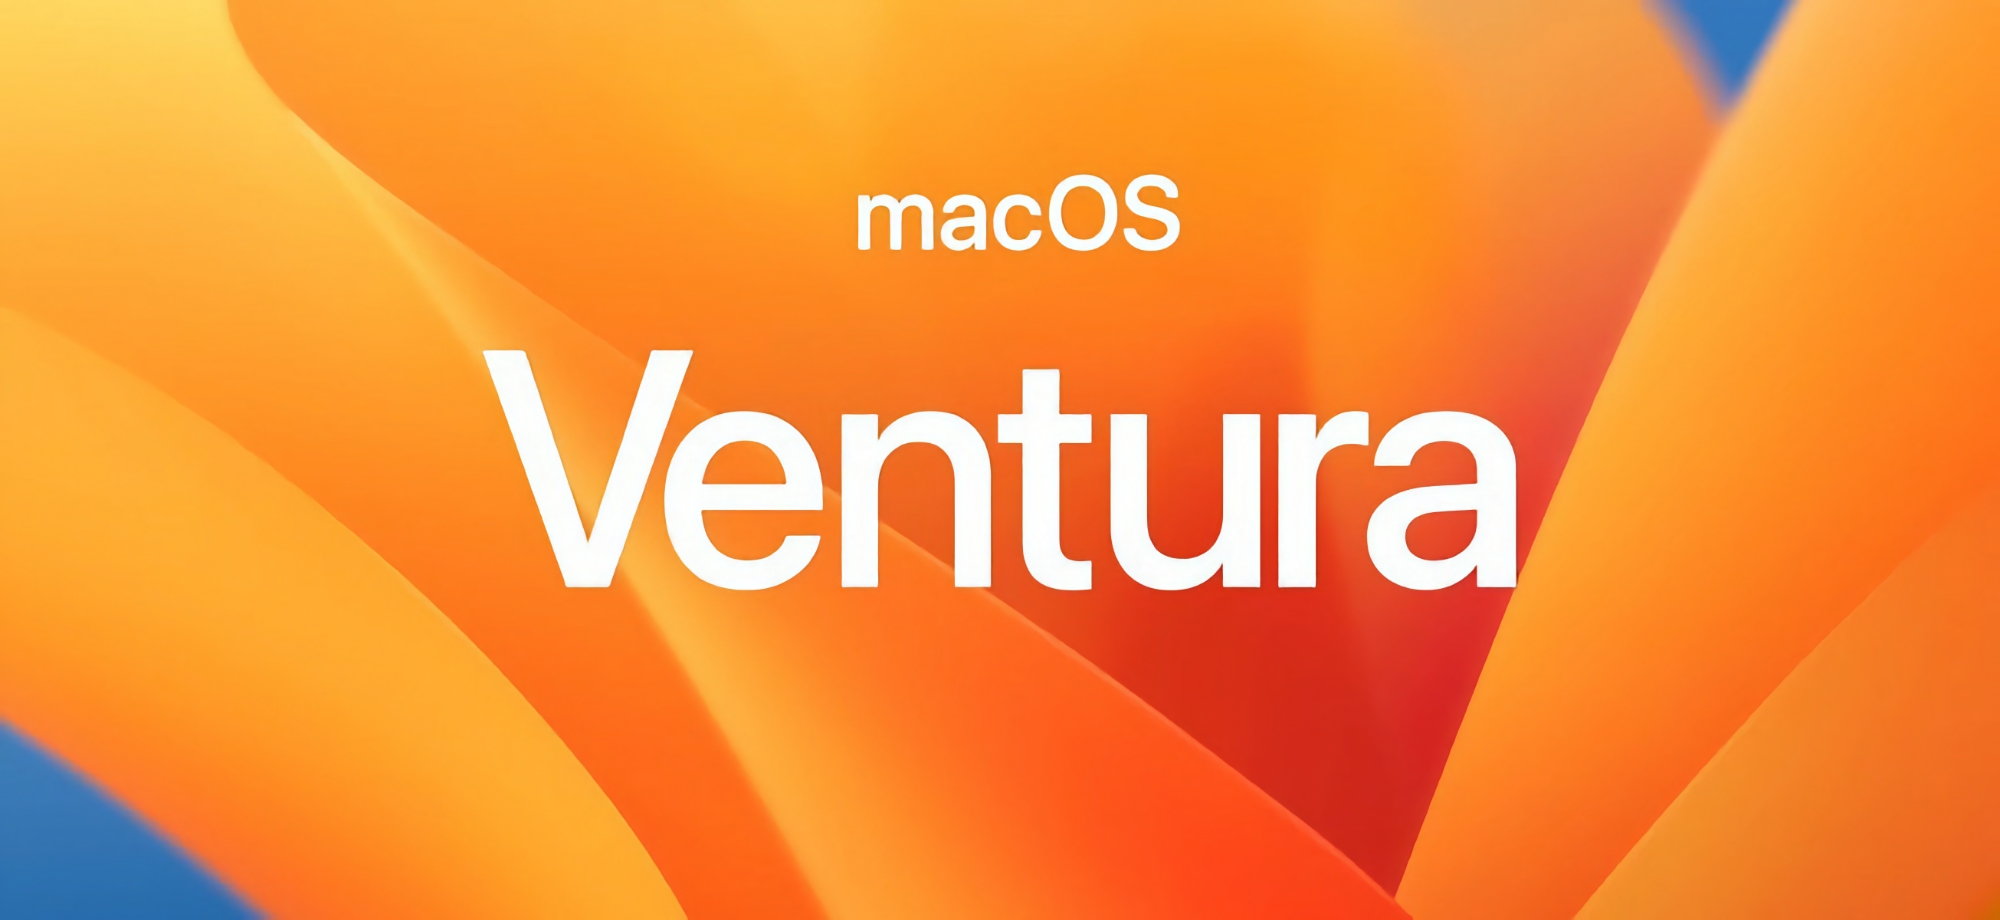 macOS Ventura 13.6 är ute: vad är nytt?